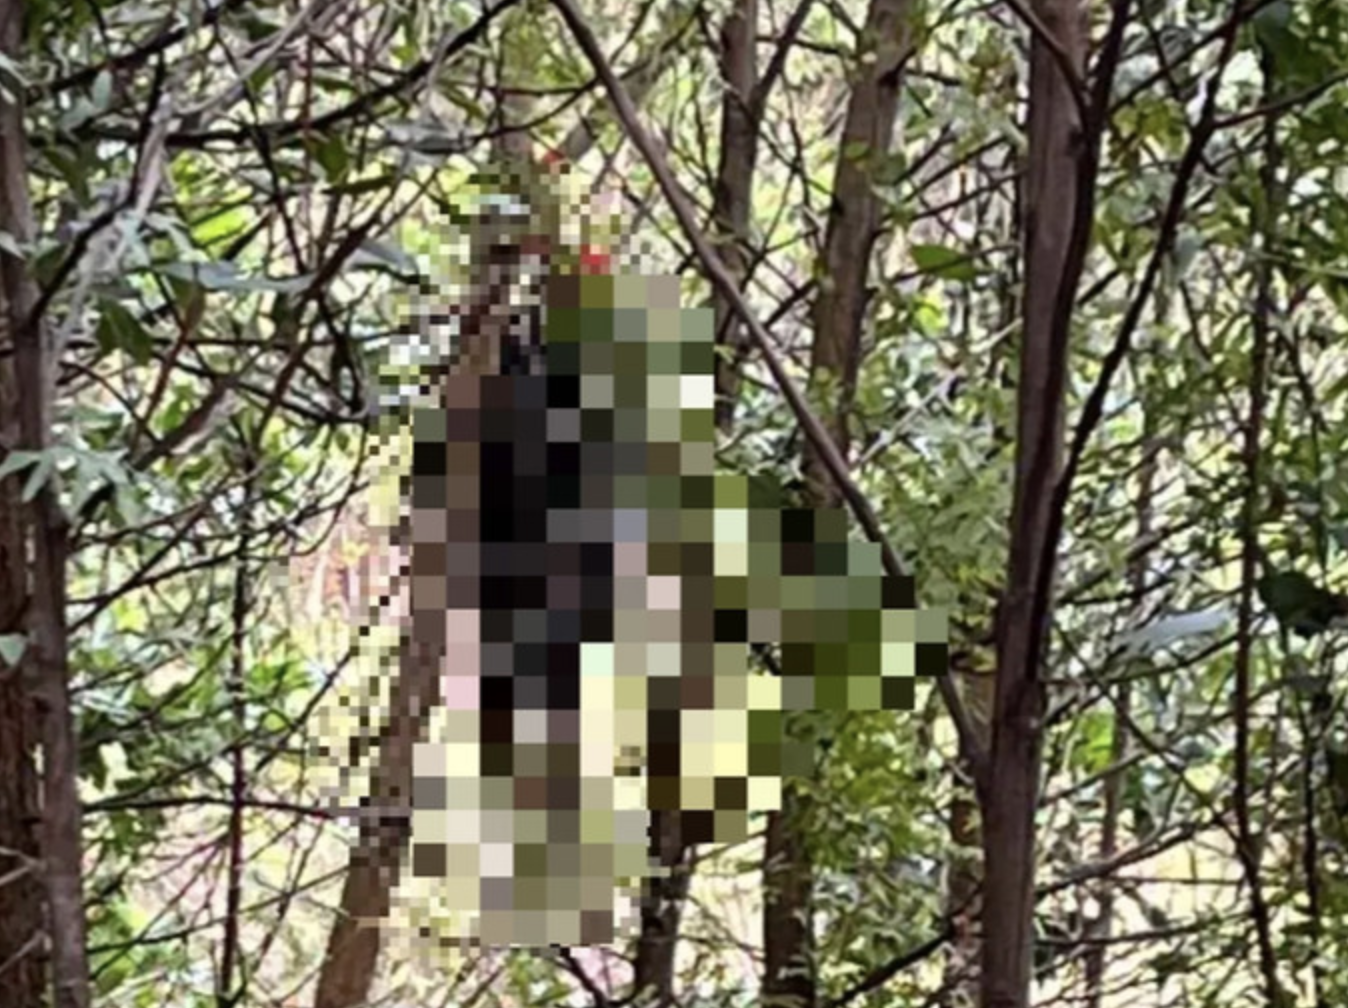 Hiện trường nơi người đàn ông tử vong trong tư thể treo cổ tại rừng keo (xã Cộng Hòa, TP. Cẩm Phả, tỉnh Quảng Ninh)